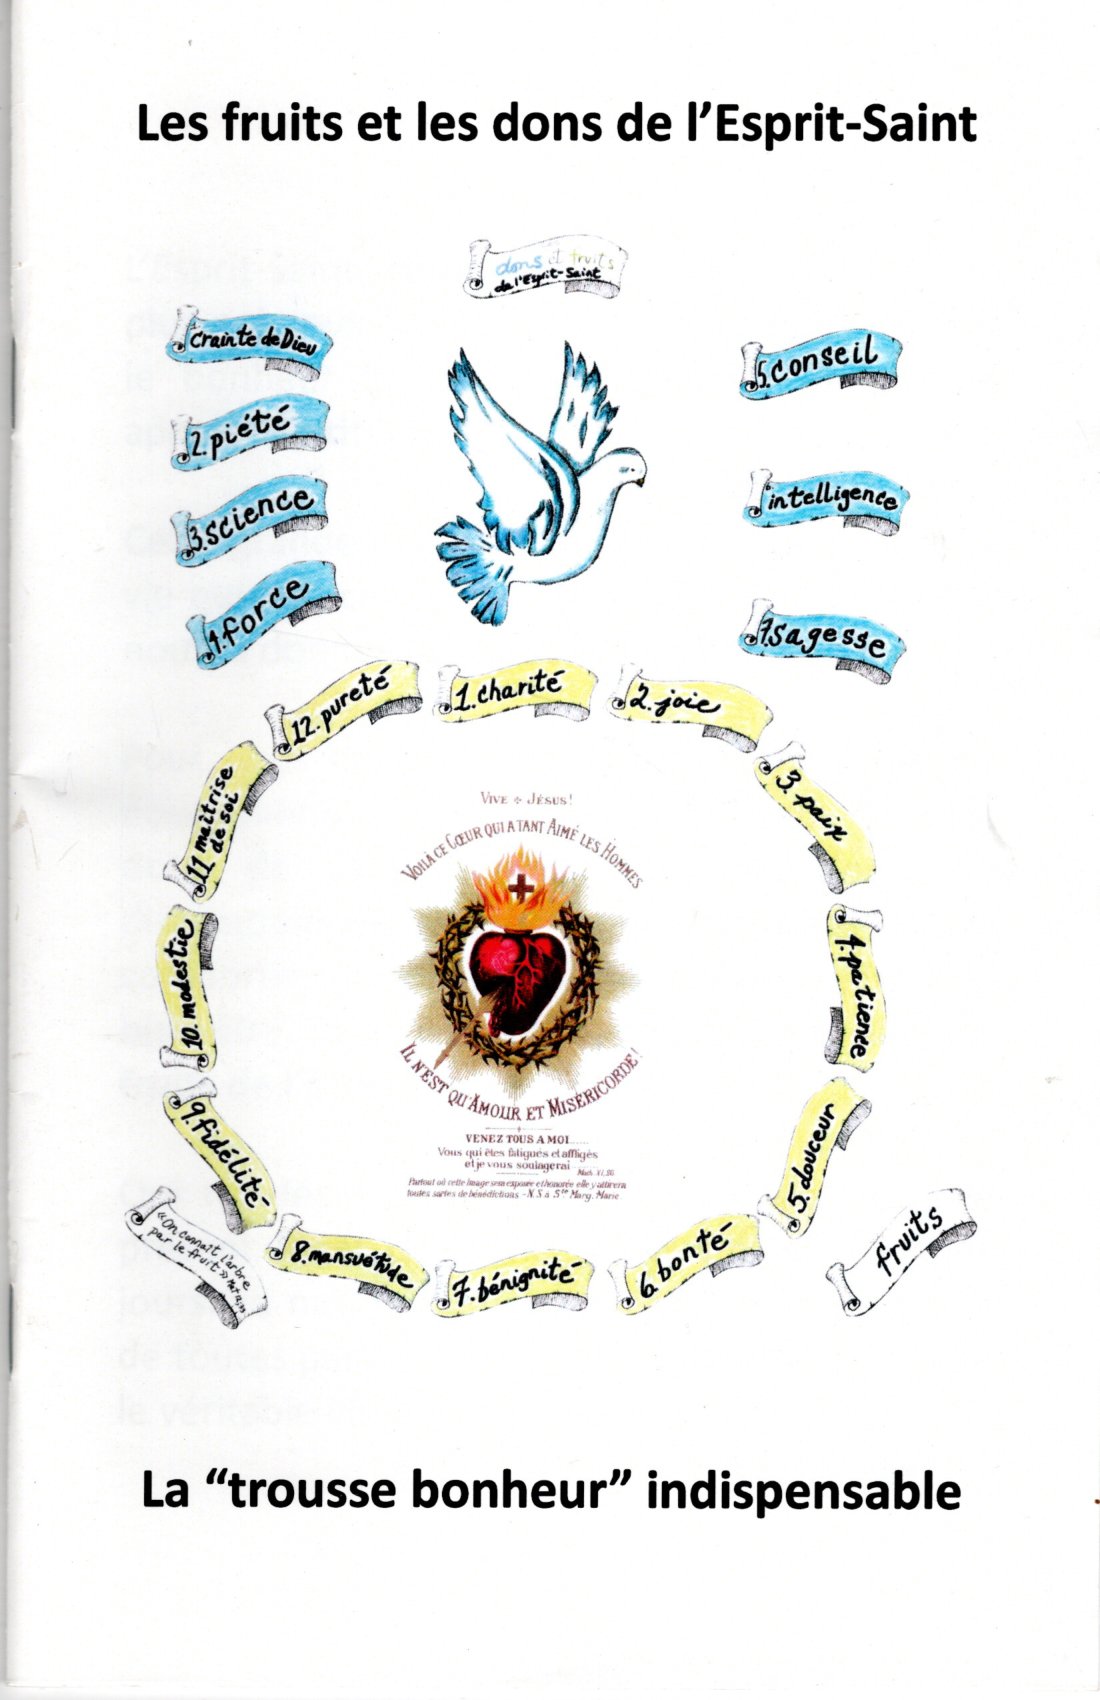 9 Dons De L Esprit Saint FRA076 – Livret «les fruits et les dons de l’esprit-saint – Priants